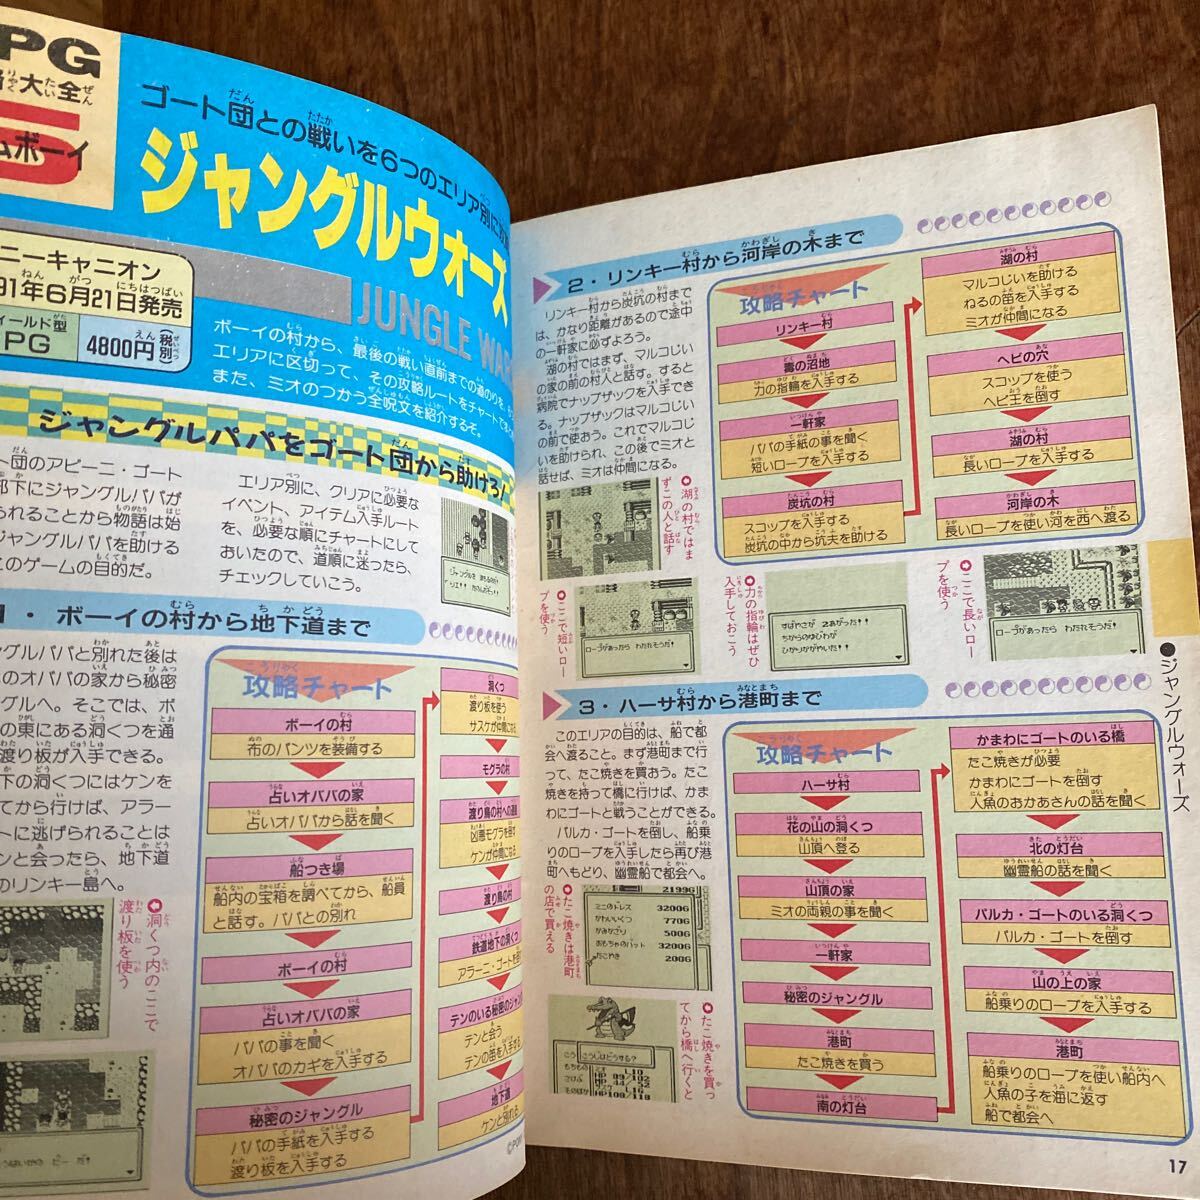 RPG攻略大全 91年6〜8月編 ファミリーコンピュータマガジン10月4日号特別付録 ファミコン スーパーファミコン ゲームボーイの画像7